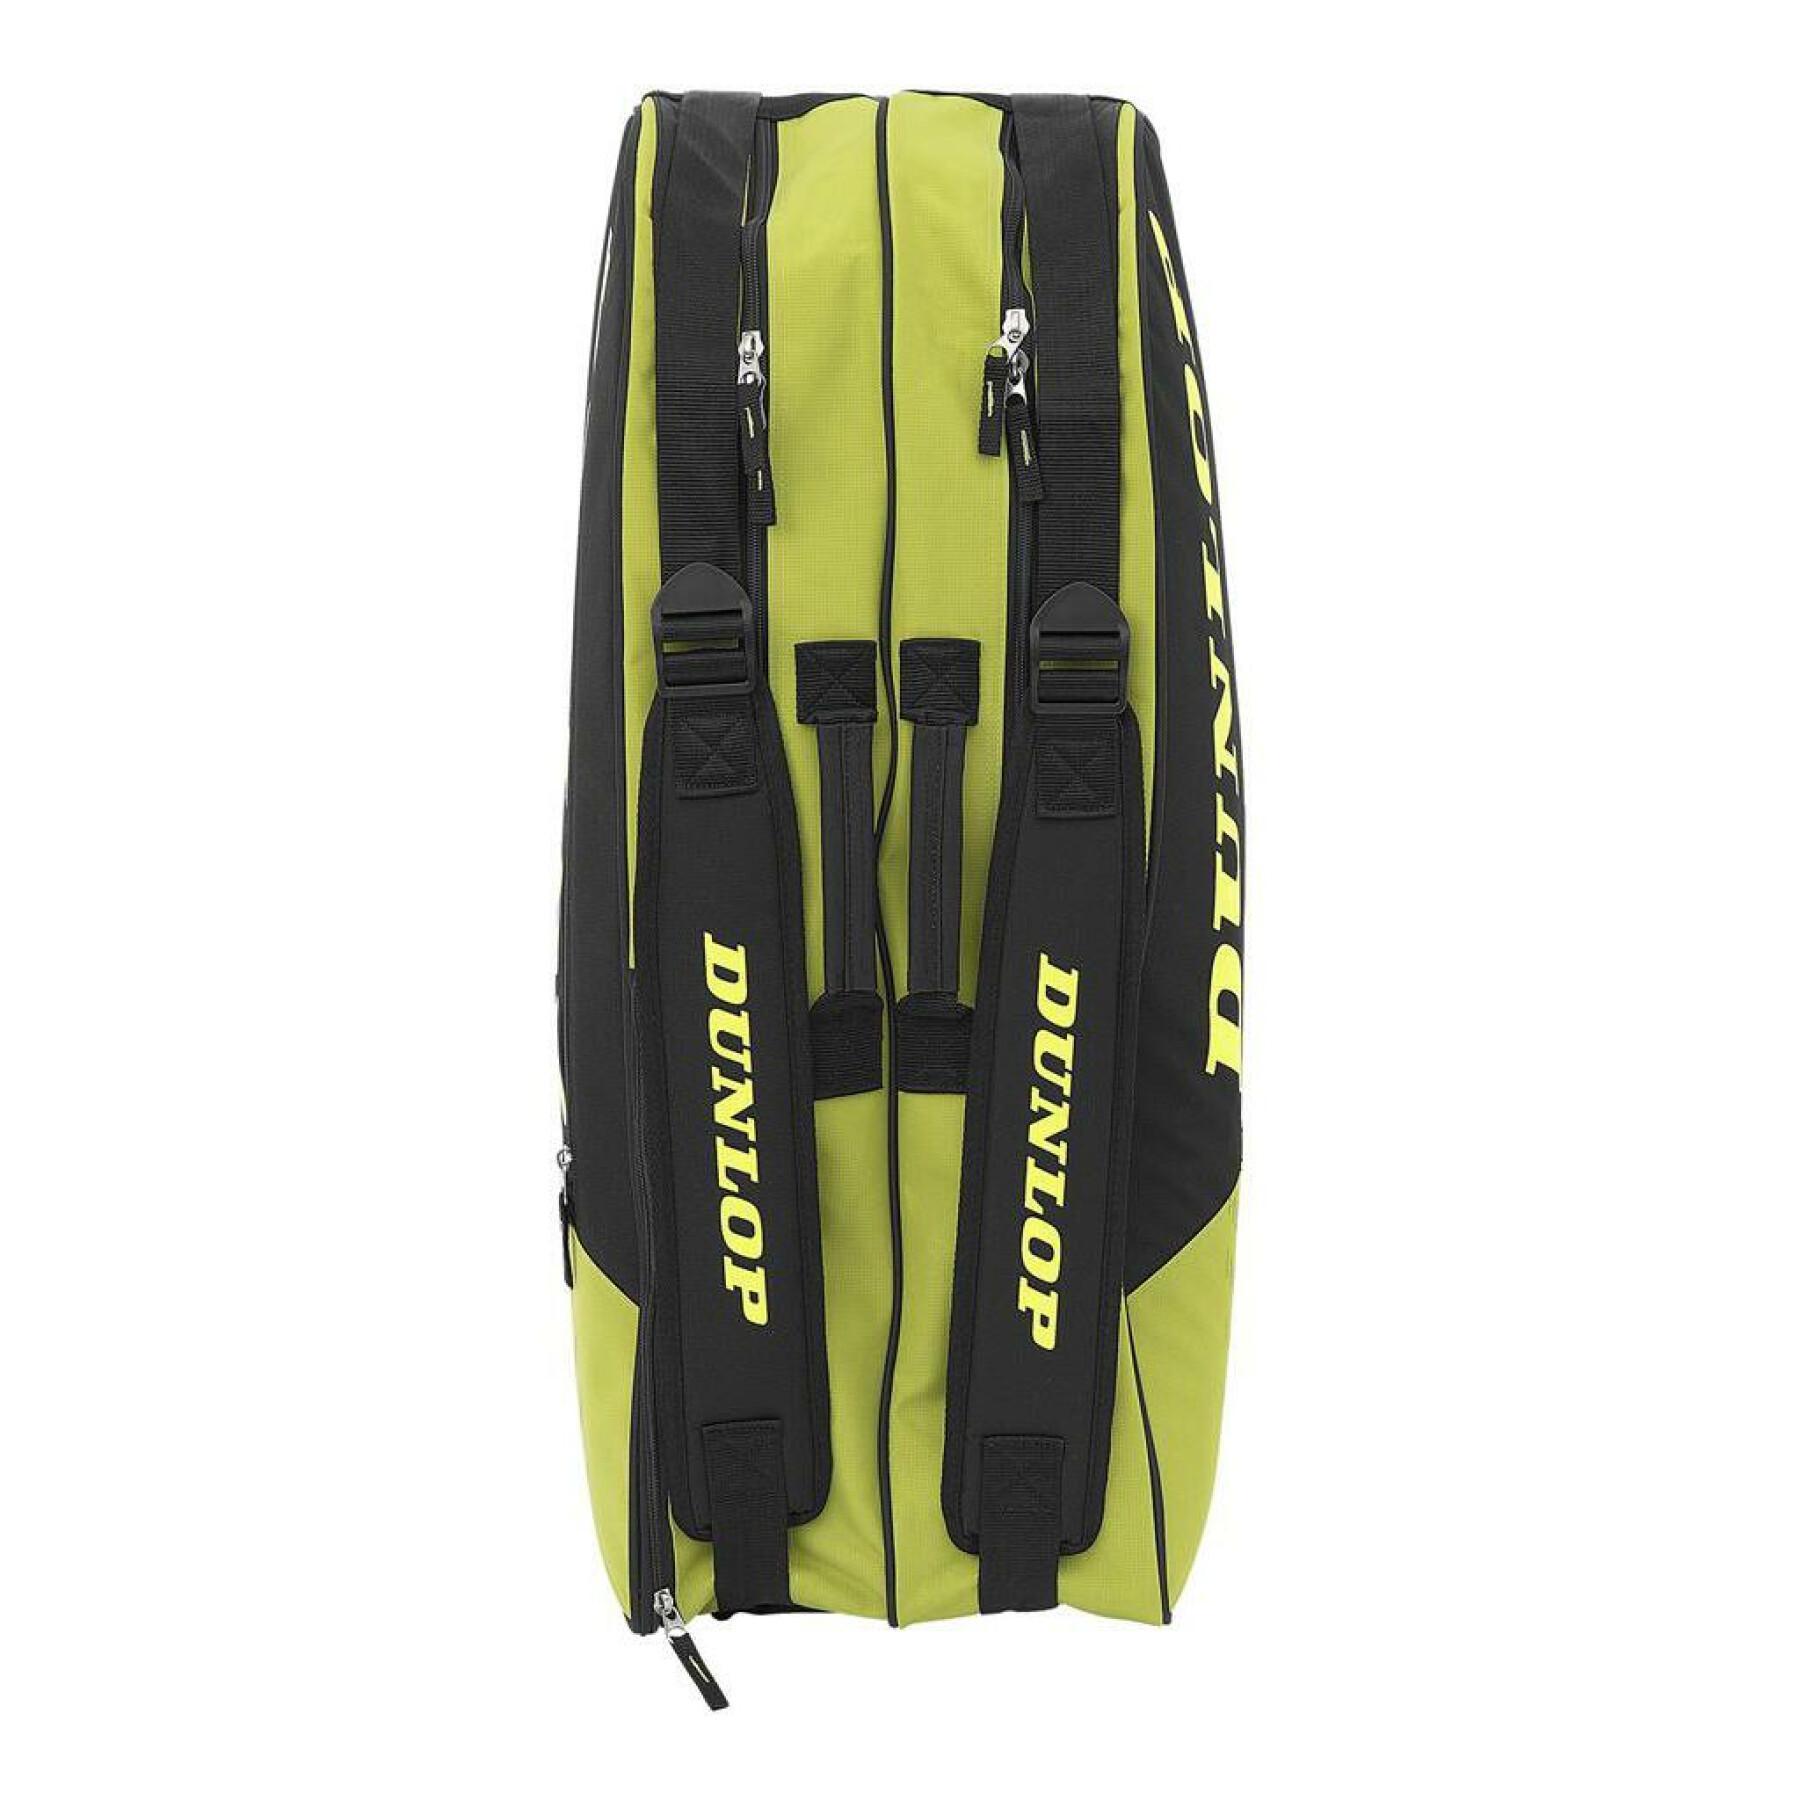 Racquet bag Dunlop sx-club